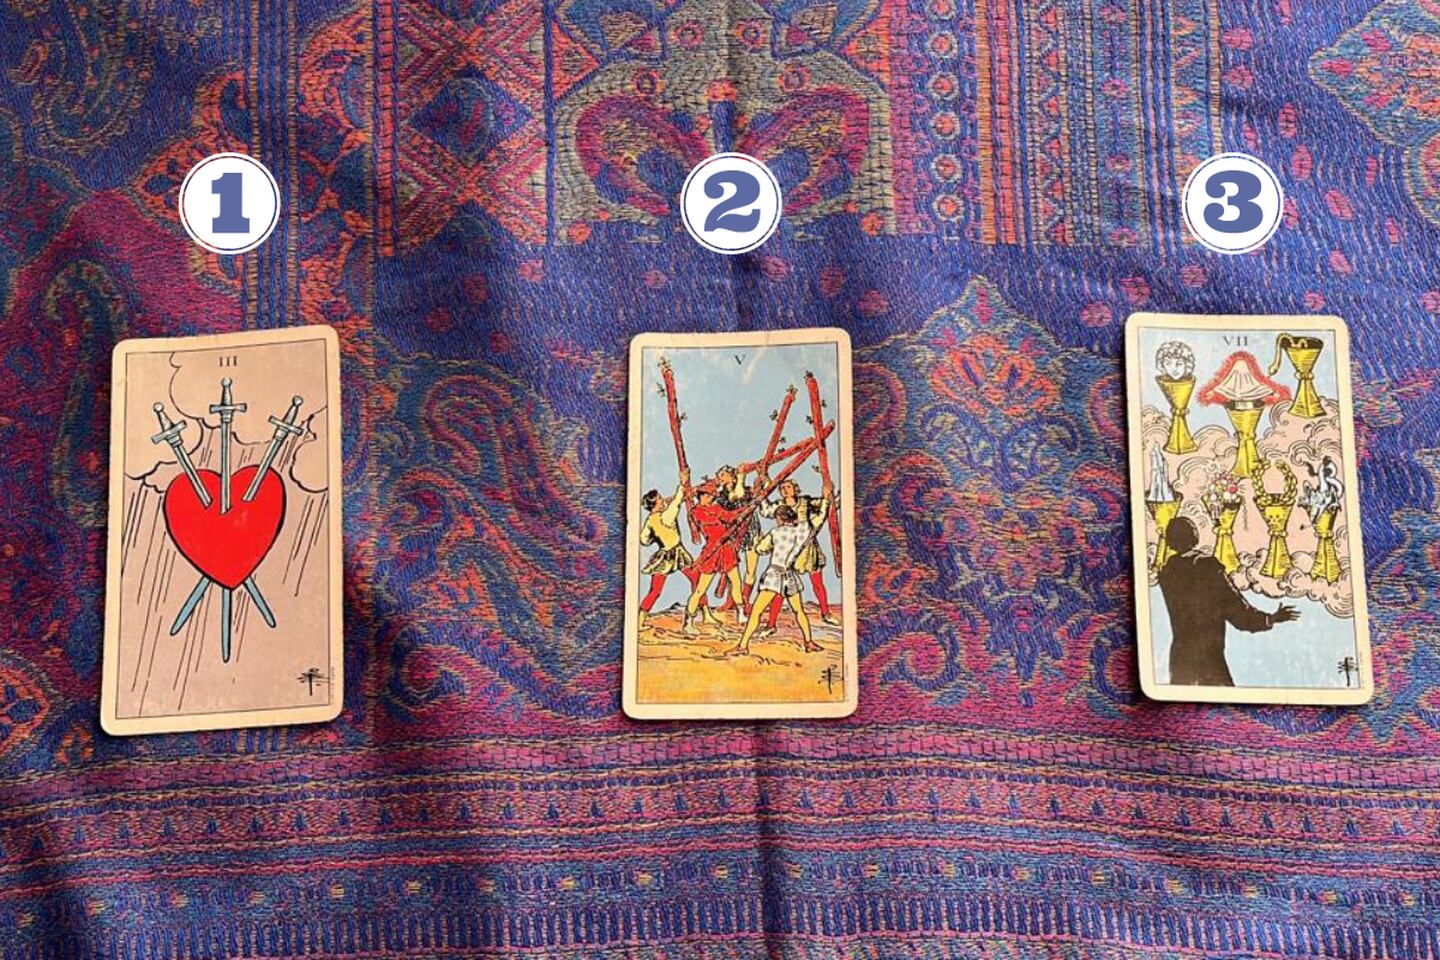 3 cartas del Tarot reveladas sobre una tela.